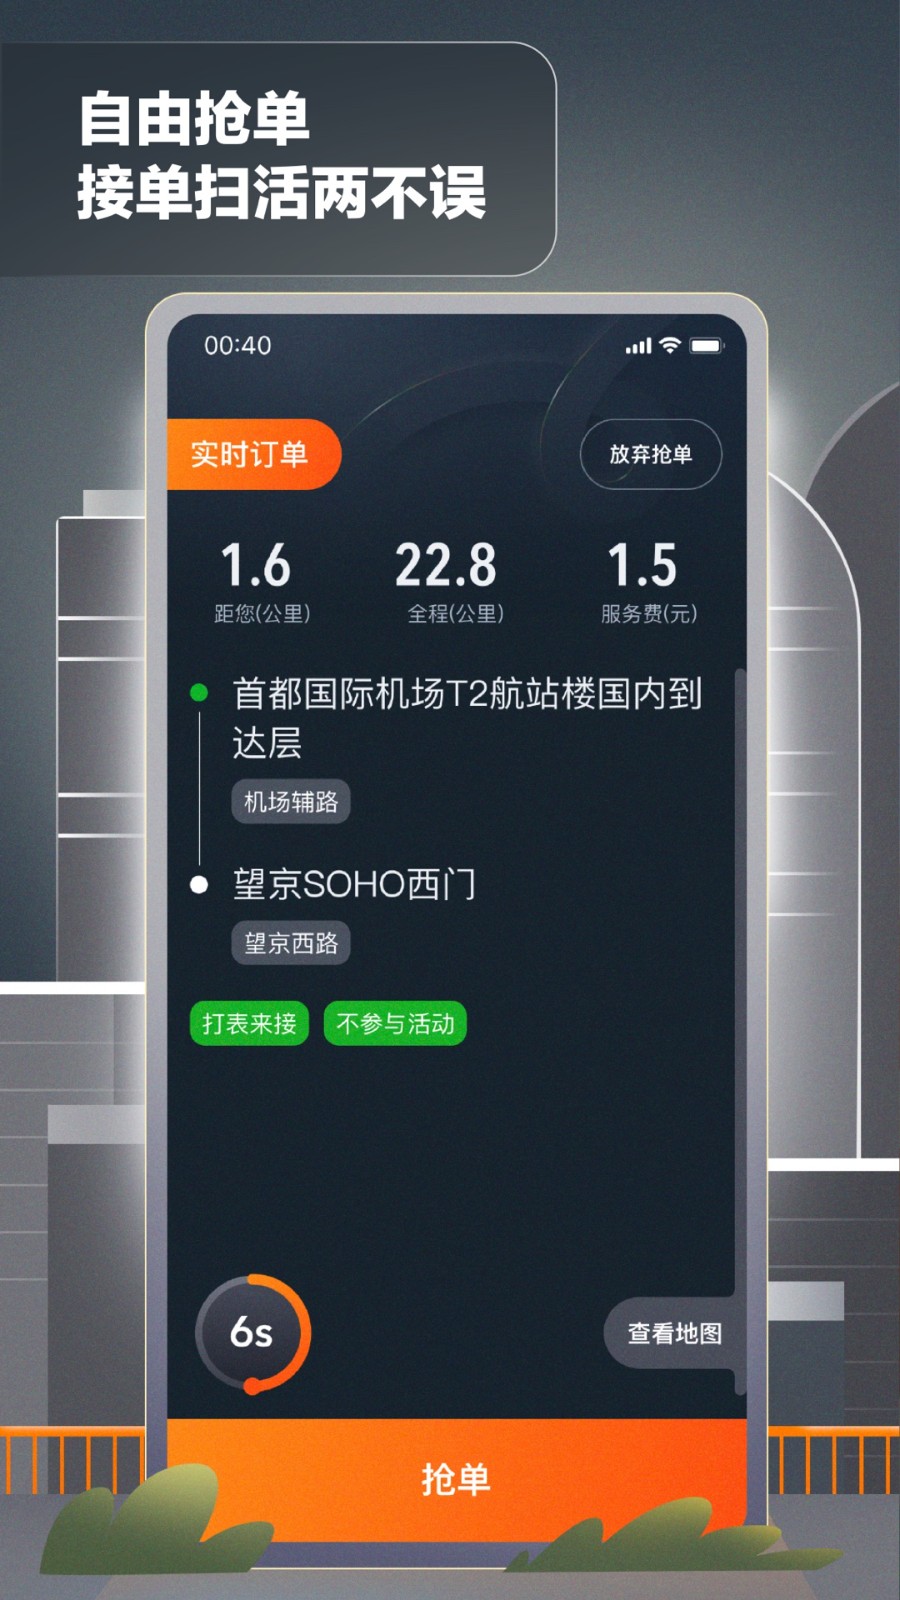 嘀嗒顺风车车主注册app(嘀嗒出租司机) v4.10.0 安卓版3